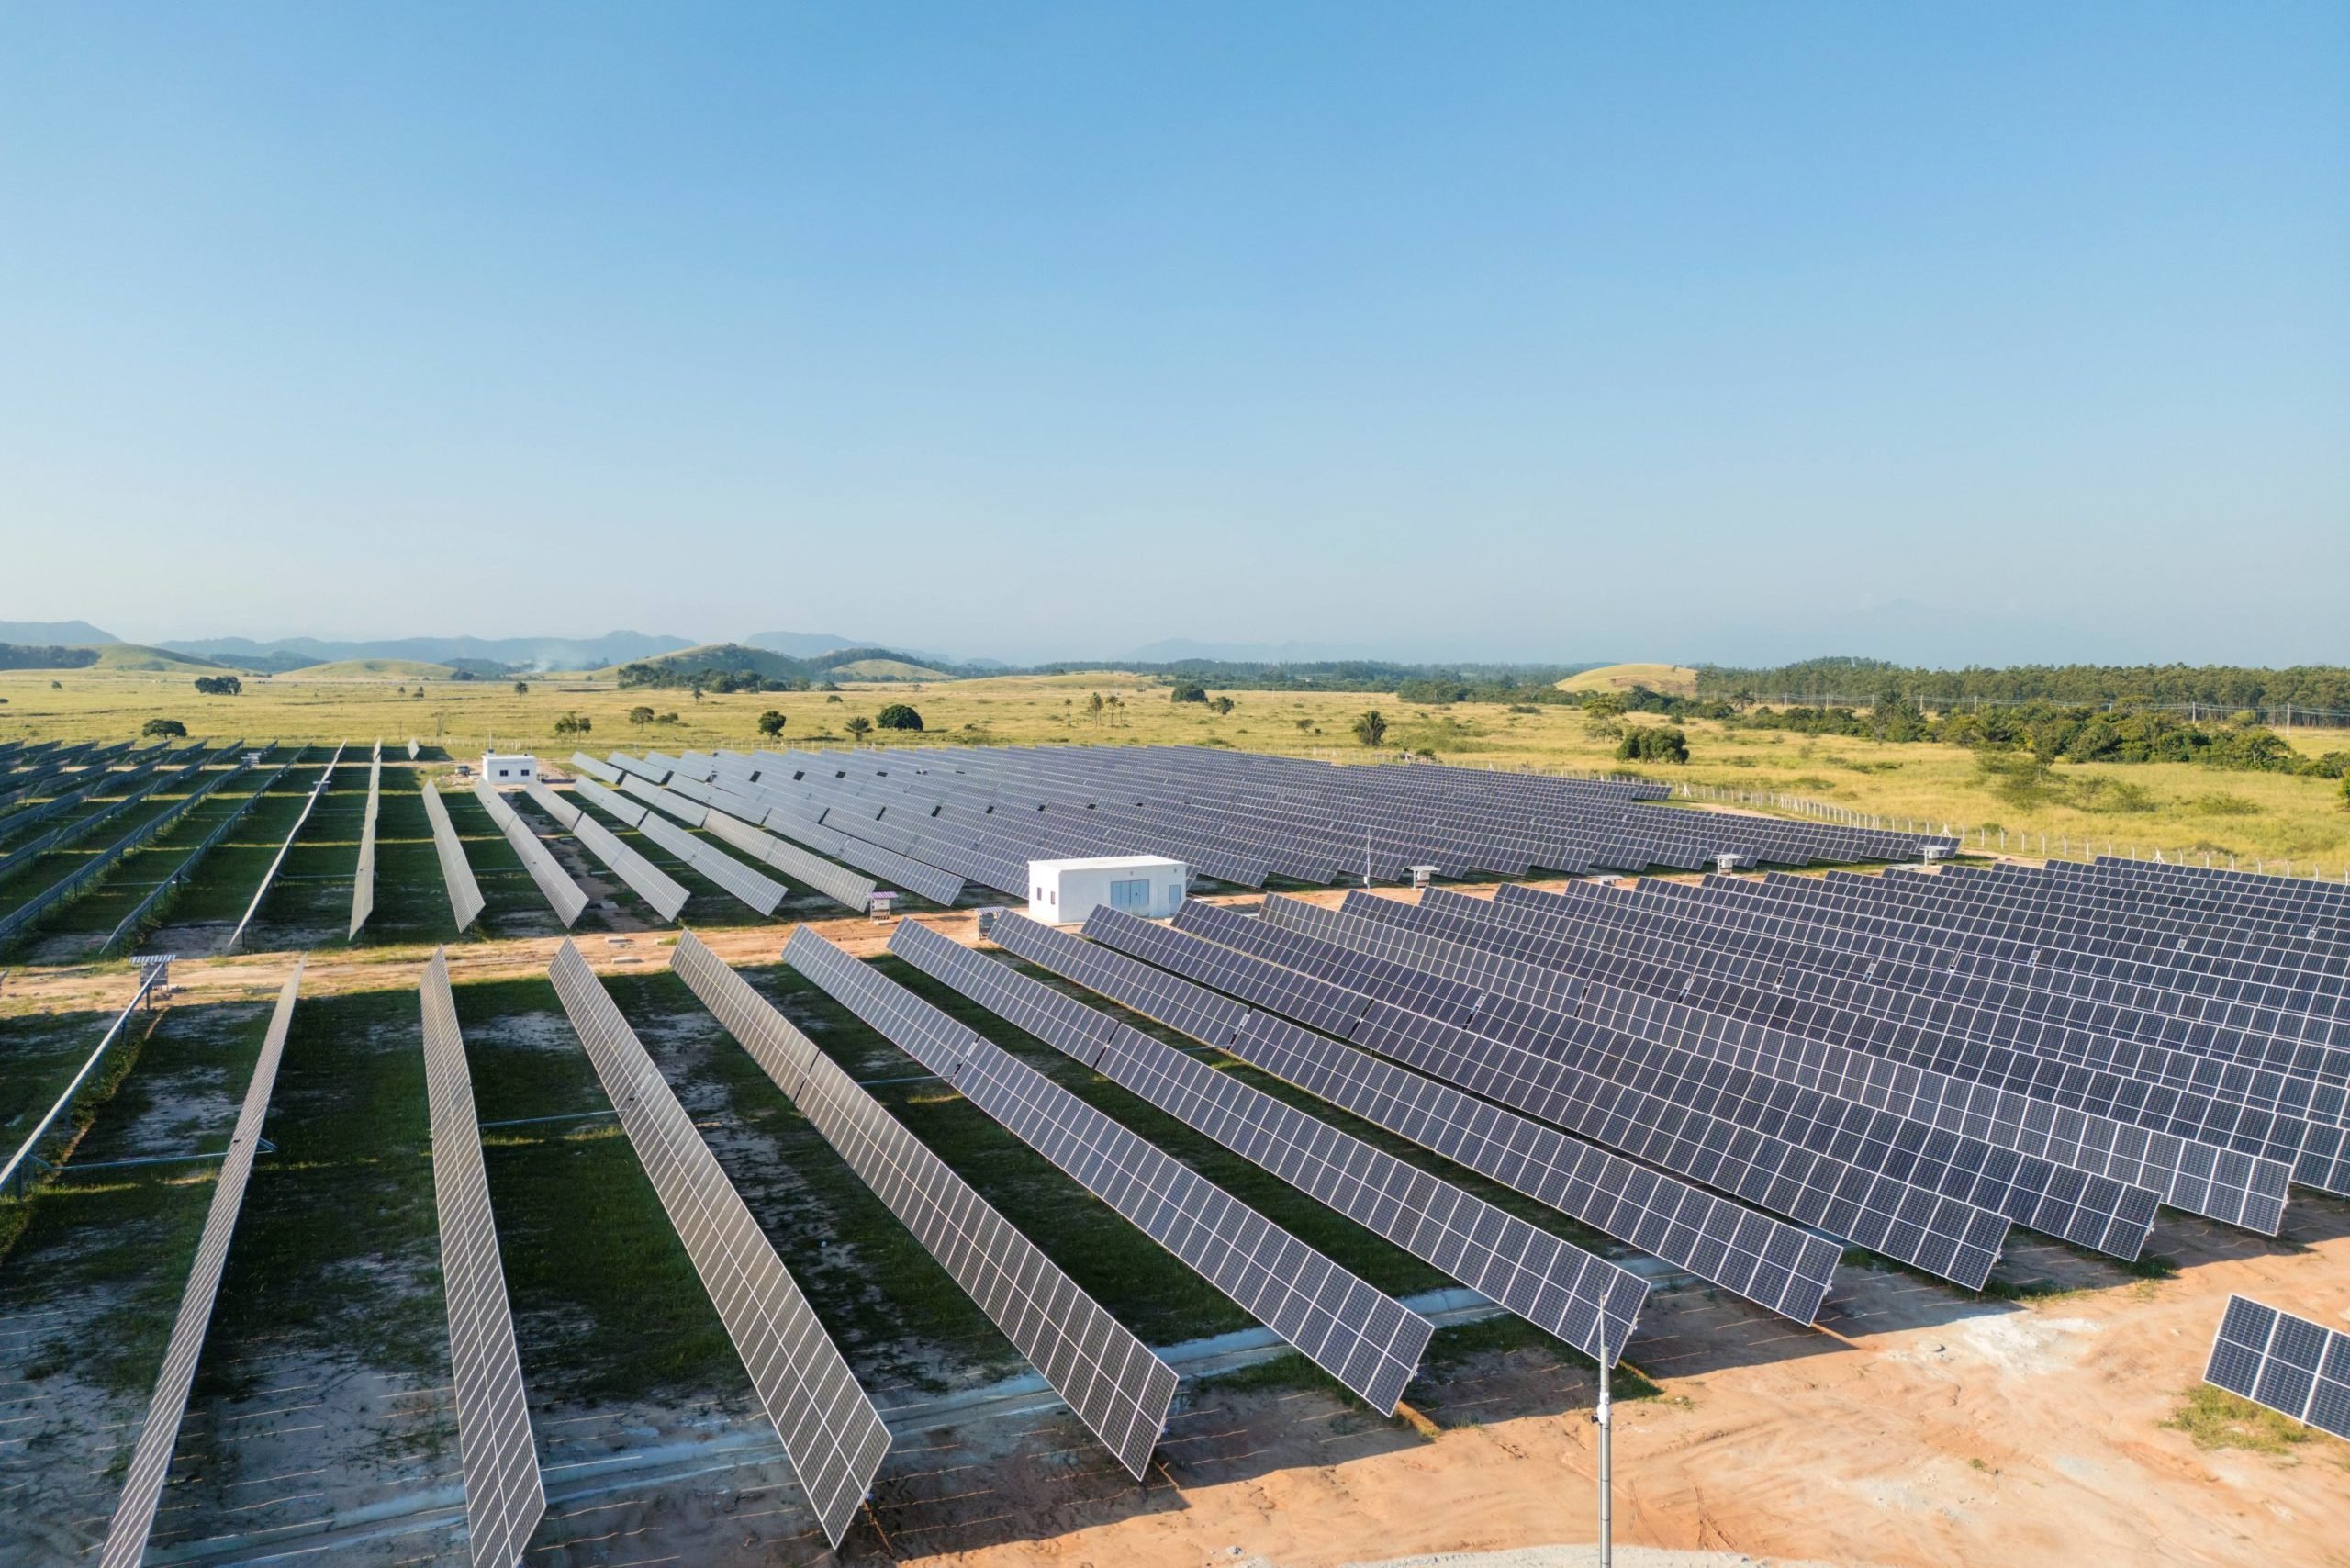 Rio+Saneamento inaugura usina solar fotovoltaica de 5 MW e planeja 100% de energia renovável até 2025. Na imagem: Usina solar fotovoltaica da Rio+Saneamento em Seropédica, no Rio (Foto: Divulgação)